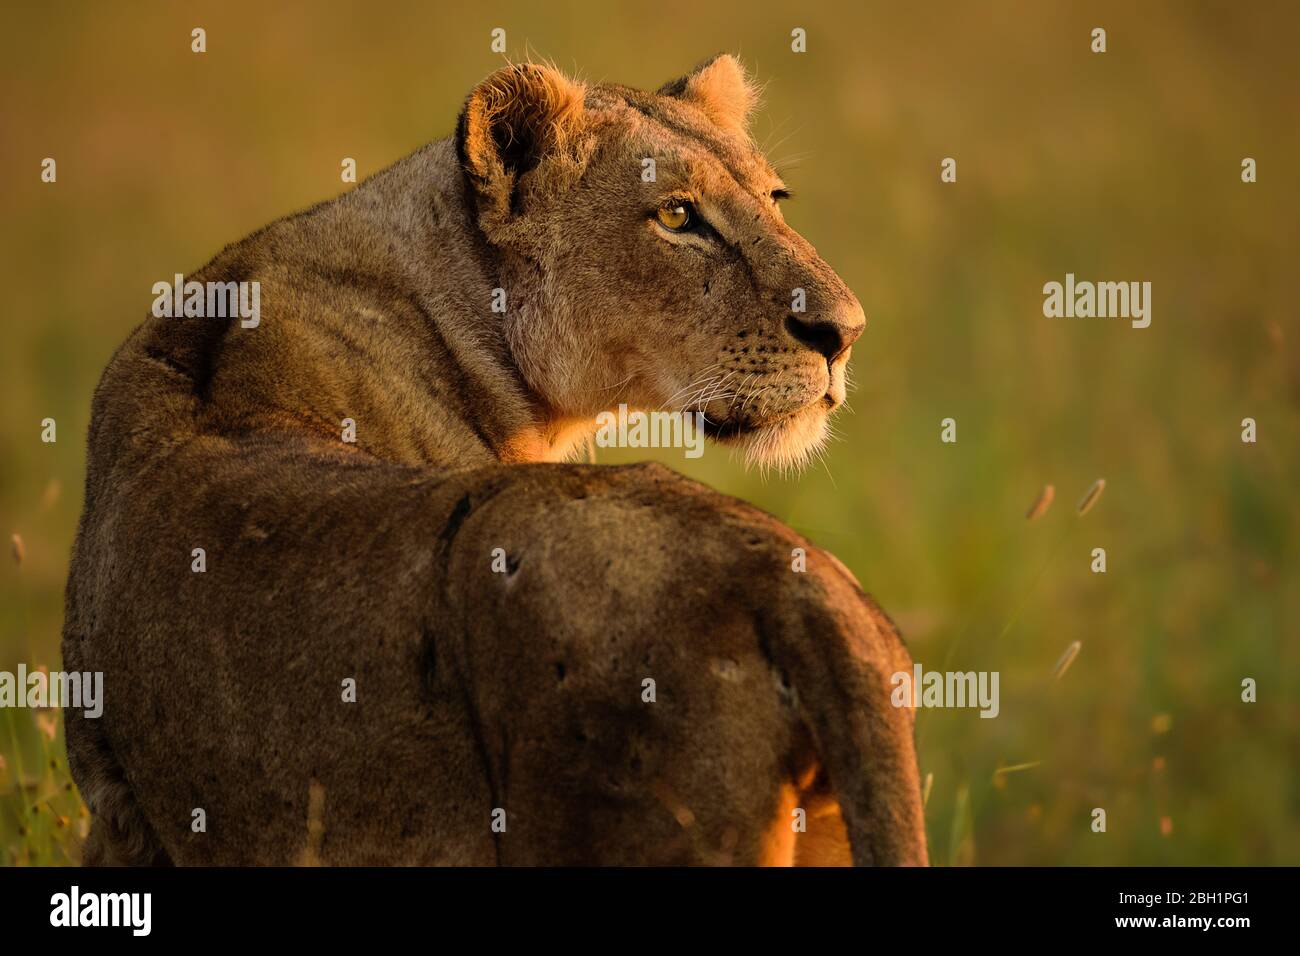 Lioness in golden light, Nairobi National Park, Kenya Stock Photo